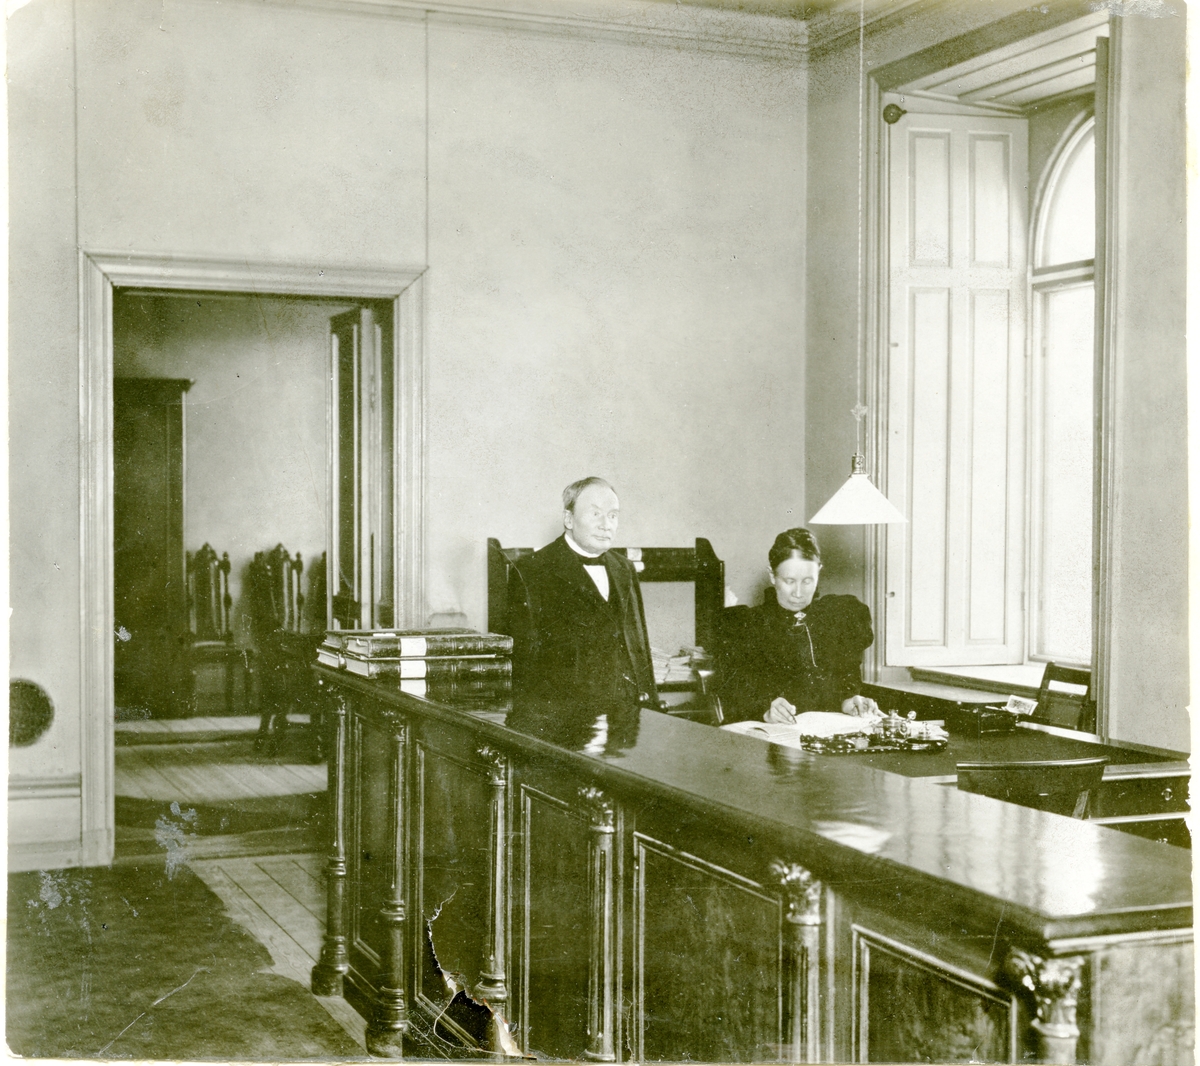 Västerås, kv. Manfred.
Direktör Öjermark, Stadssparbanken i Stora Westmannia, c:a 1900-1910-tal.